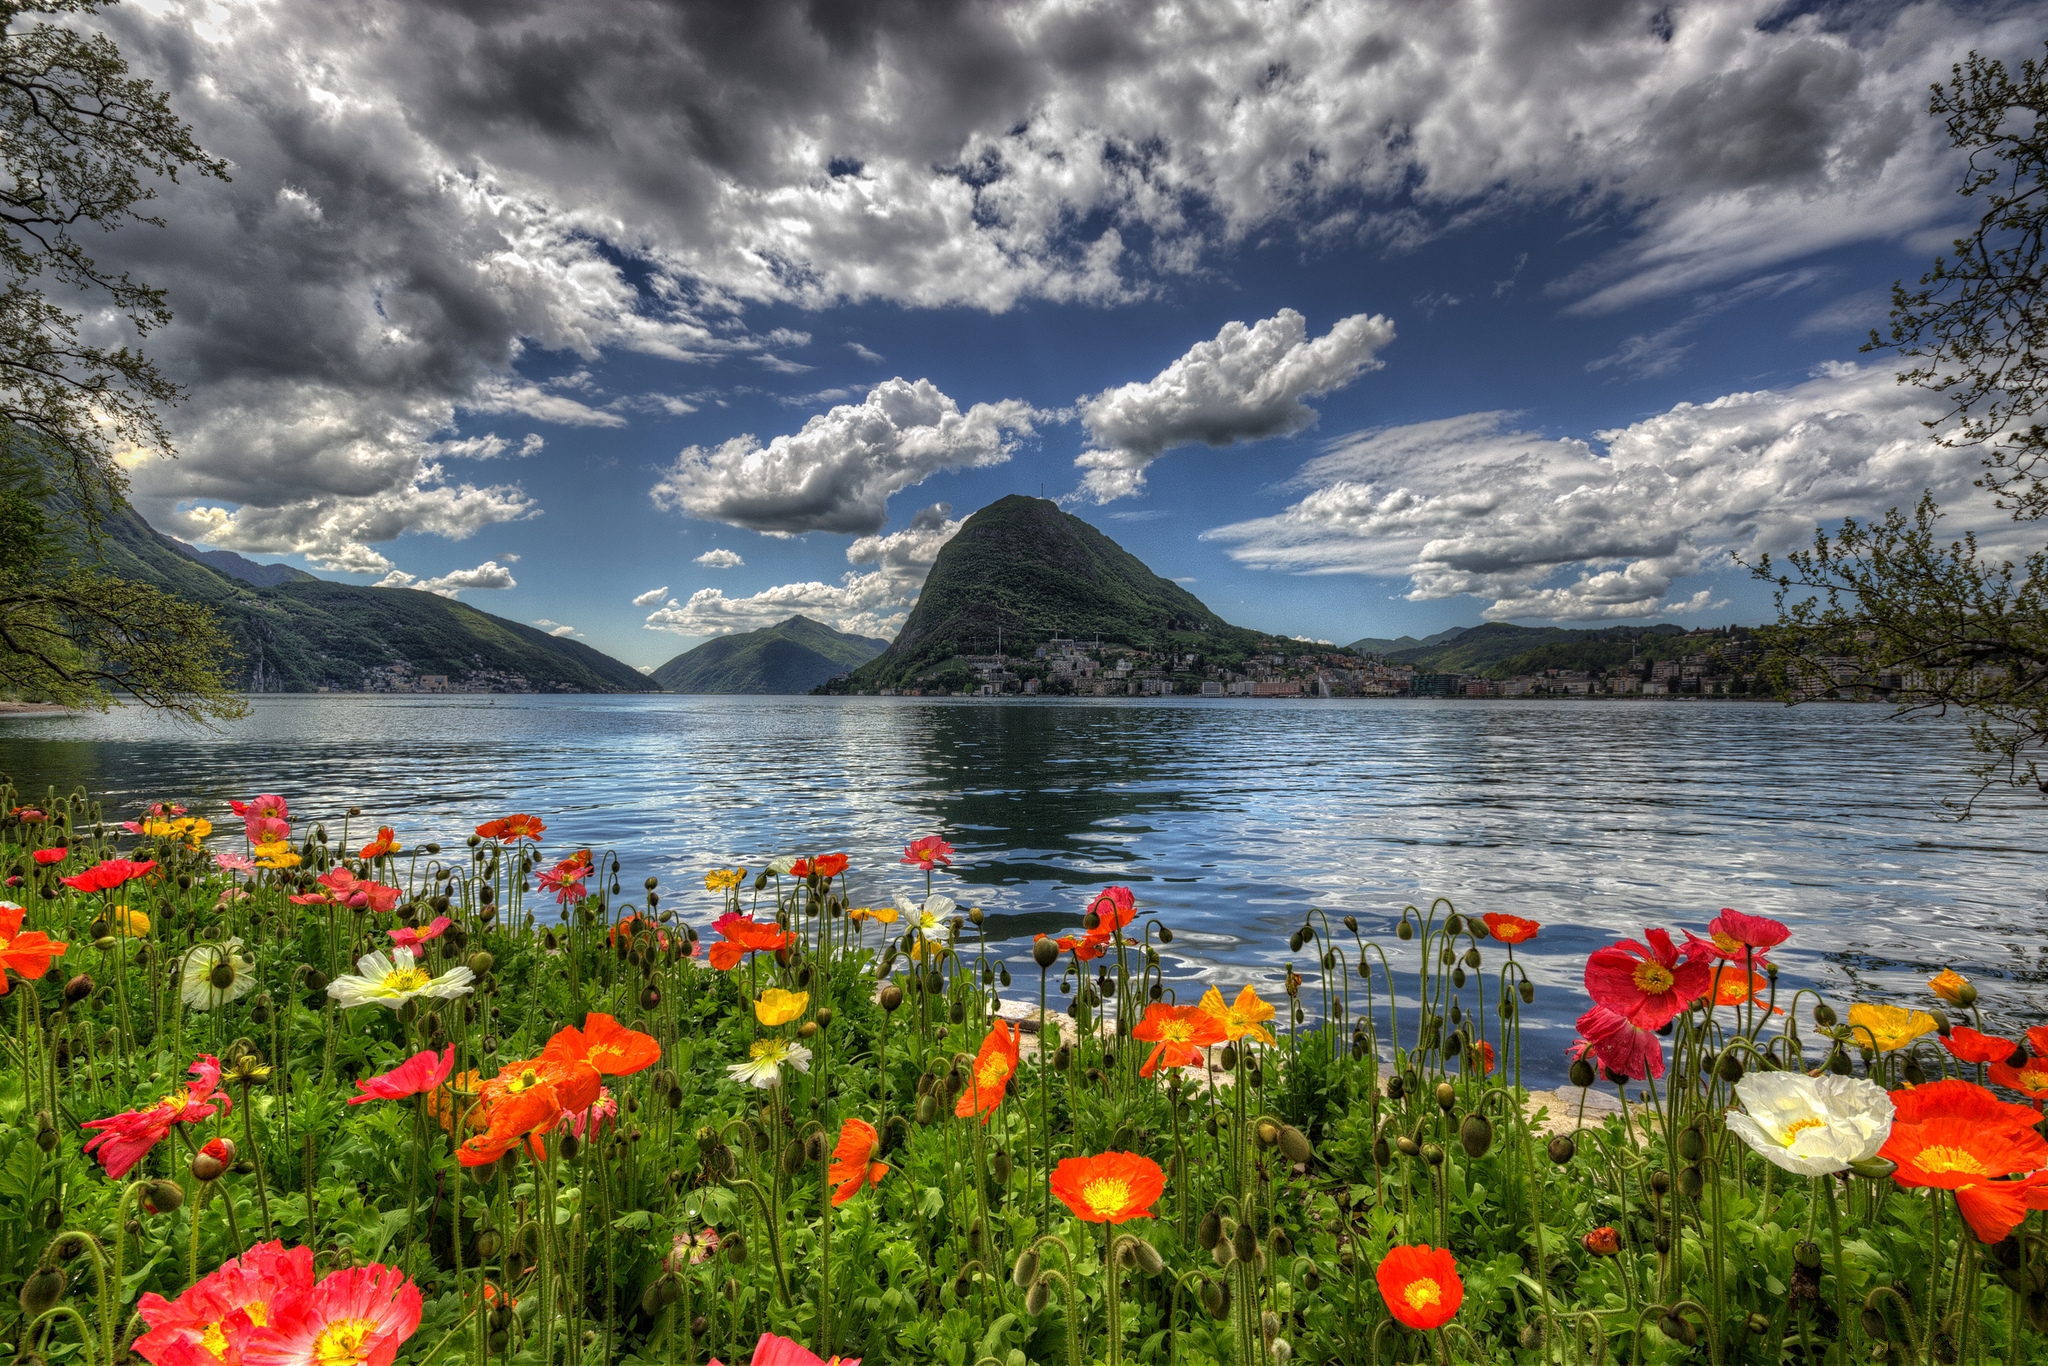 Скачать обои бесплатно Пейзаж, Гора, Озеро, Цветок, Швейцария, Фотографии картинка на рабочий стол ПК